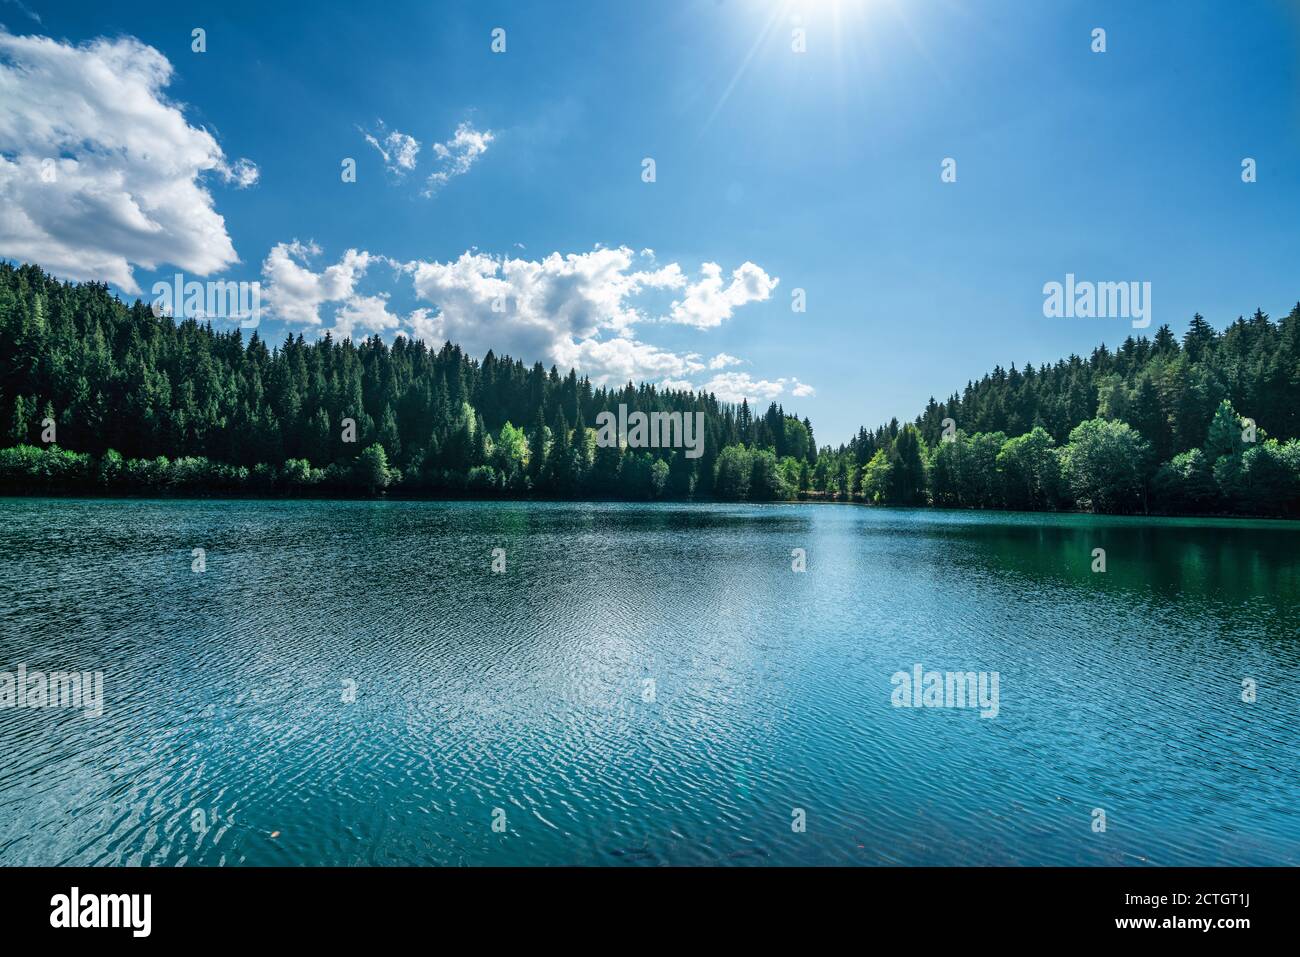 Belle vue sur un lac avec un ciel nuageux et blanc pluffy et un fond de montagne. Concept de tourisme de voyage. Photo de haute qualité Banque D'Images